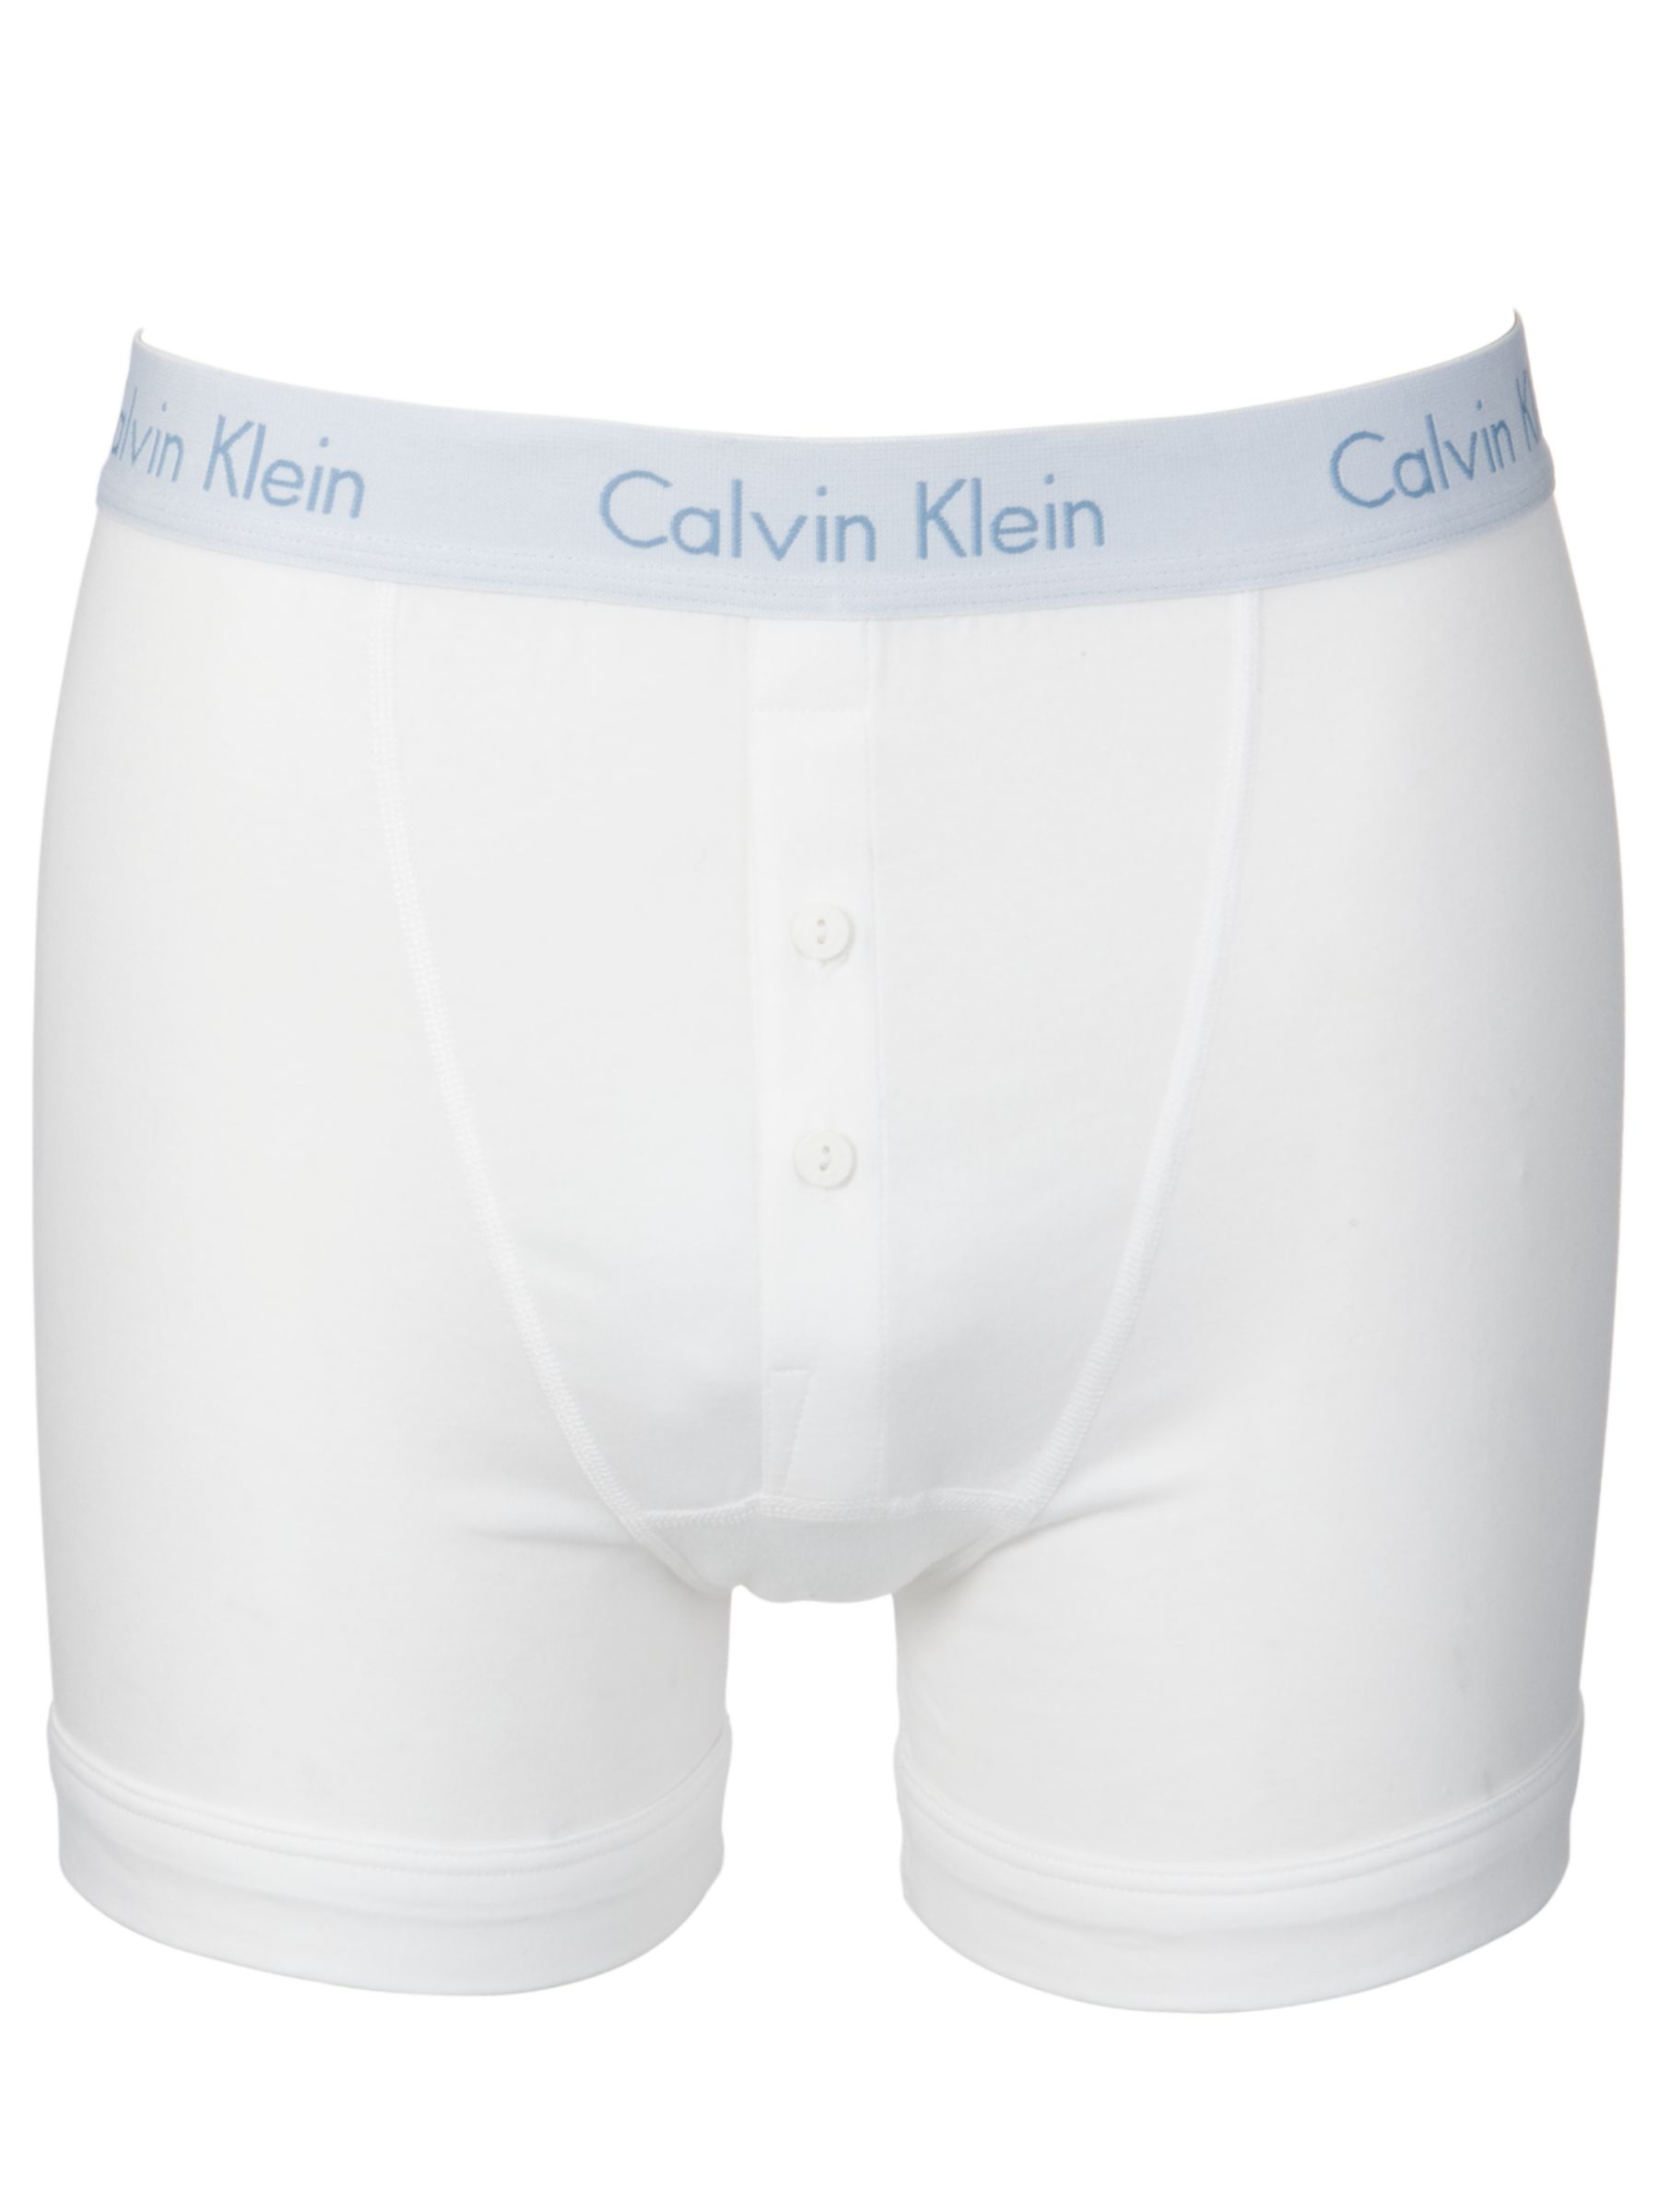 Calvin Klein Flexible Fit Cotton Trunks, White, Small